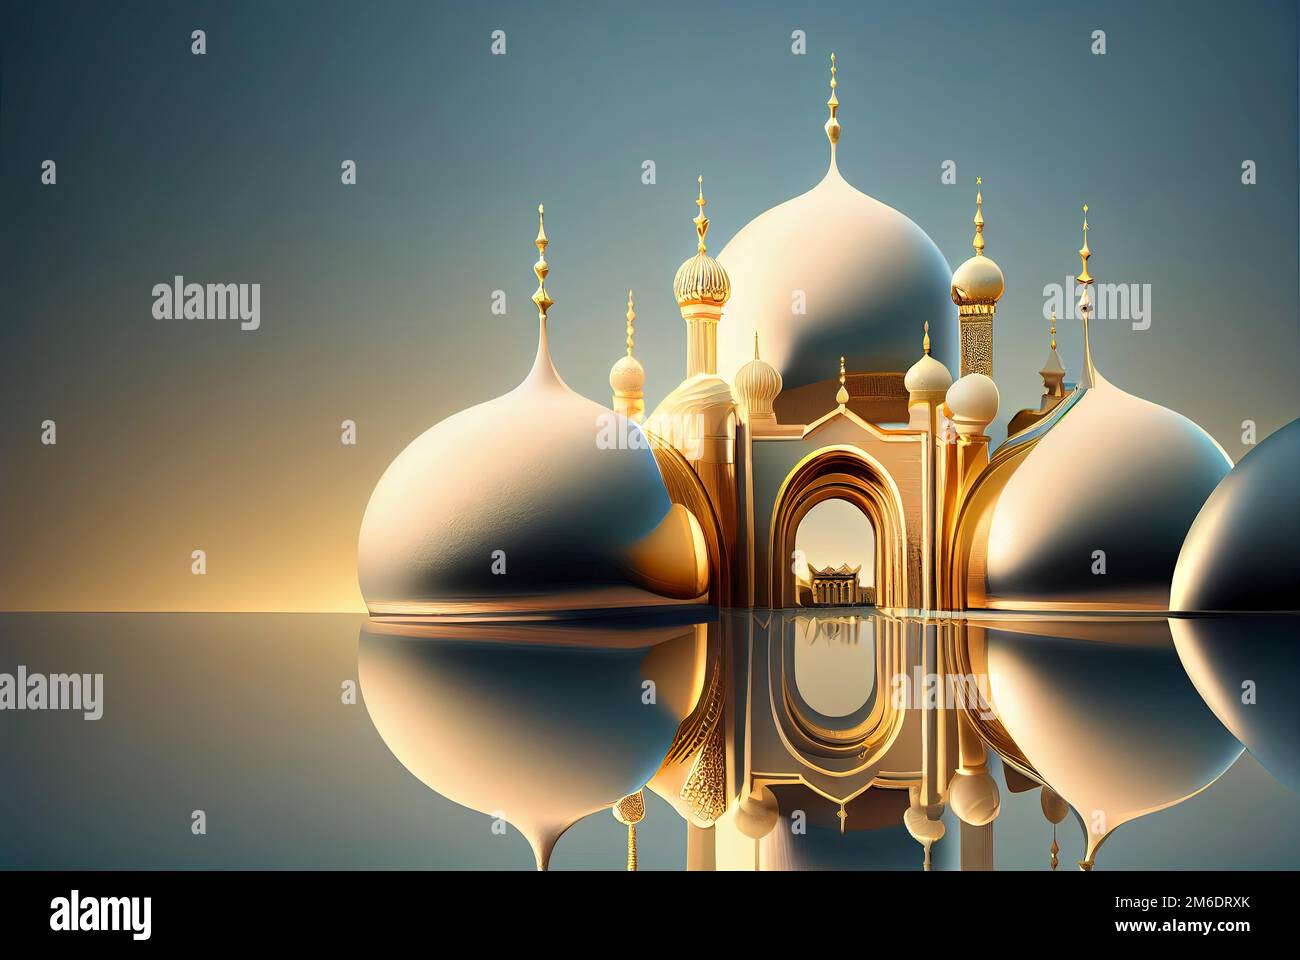 Illustrazione di sfondo ramadan con moschea dorata Foto Stock